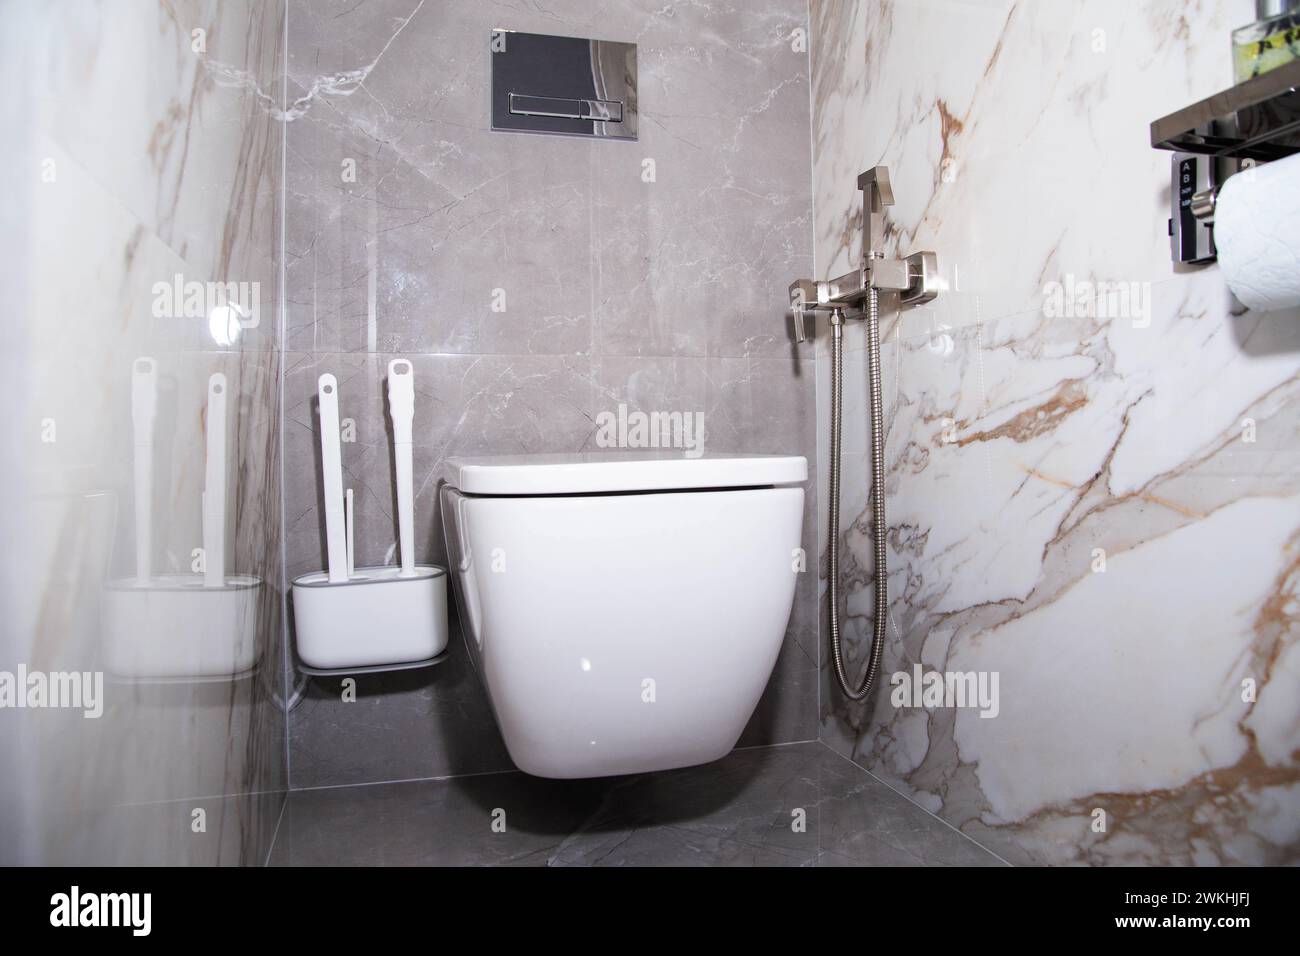 L'intérieur d'une toilette moderne avec des carreaux de porcelaine grise sur les murs, une toilette murale et une douche hygiénique. Banque D'Images